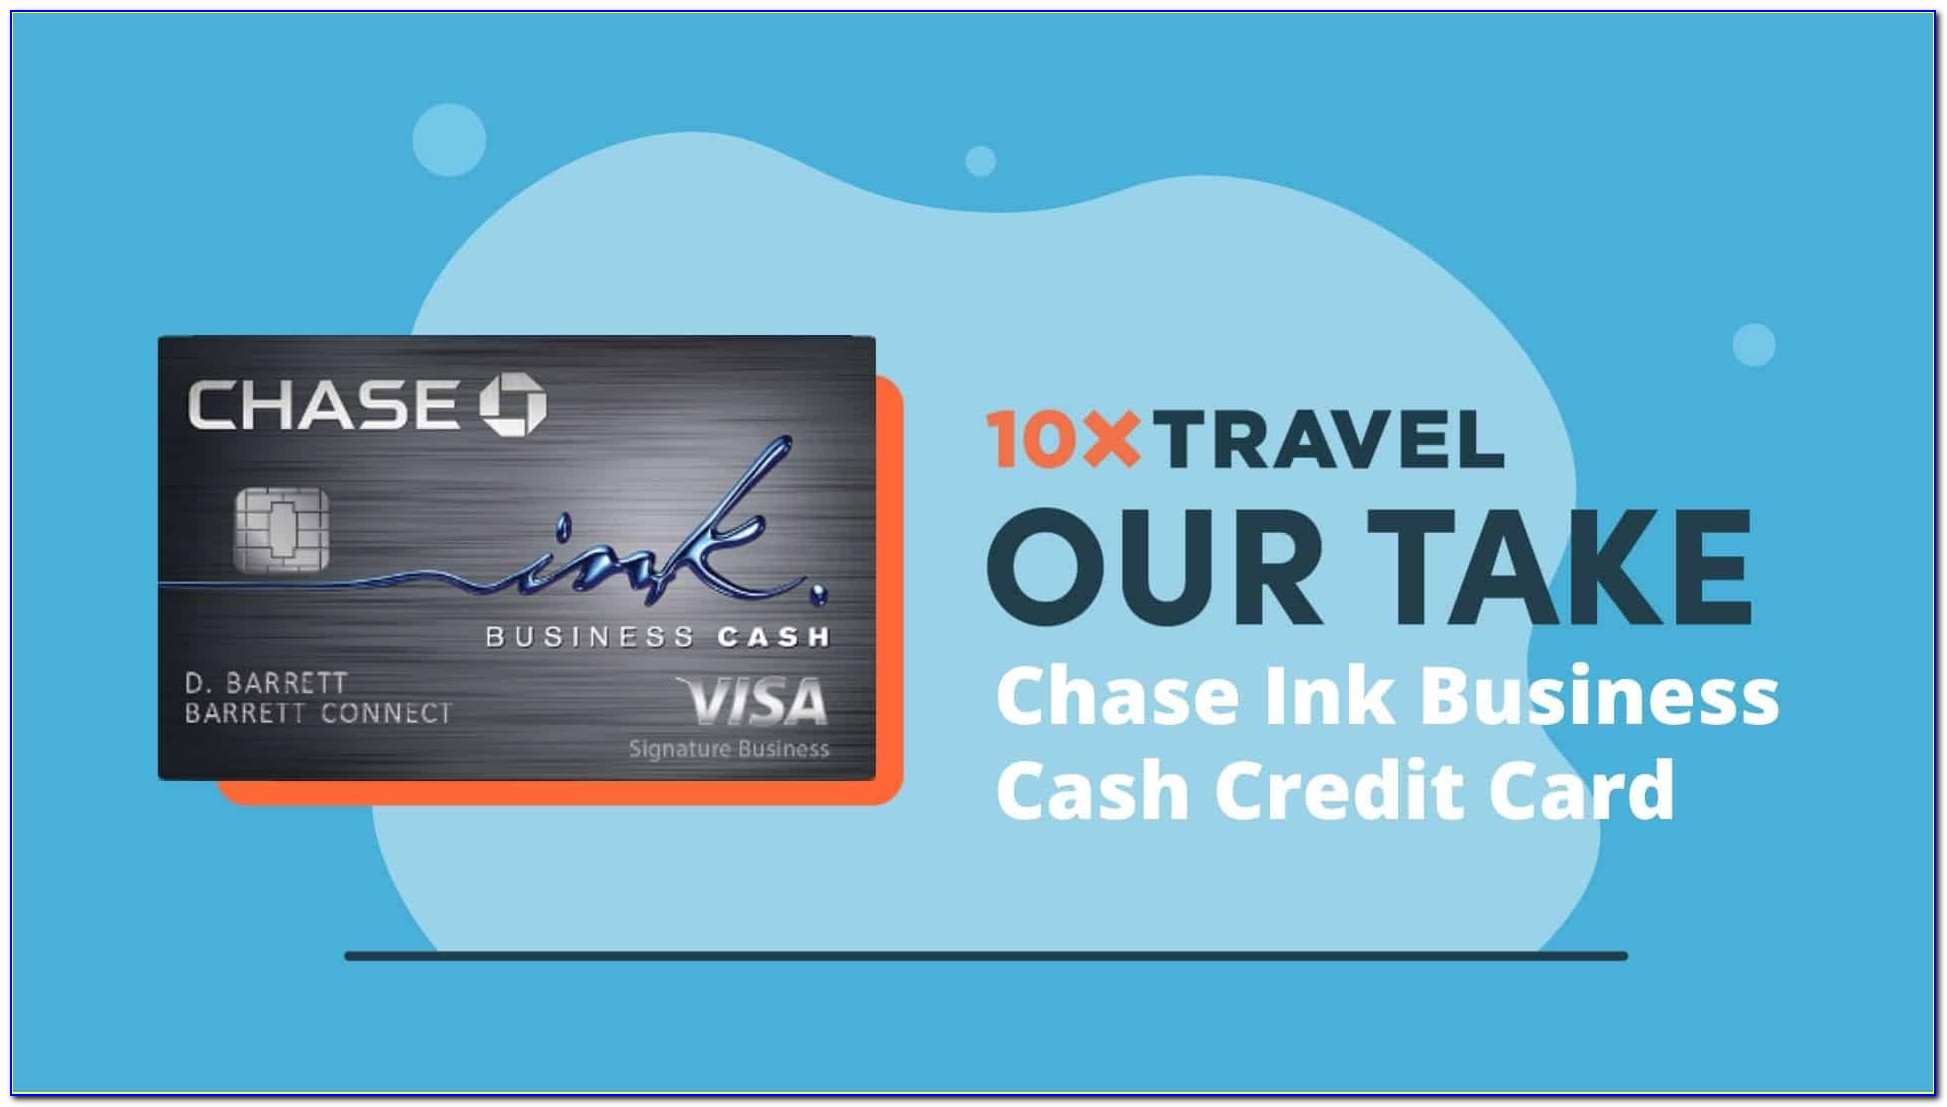 Chase Ink Business Cash Card $500 Bonus Cash Back